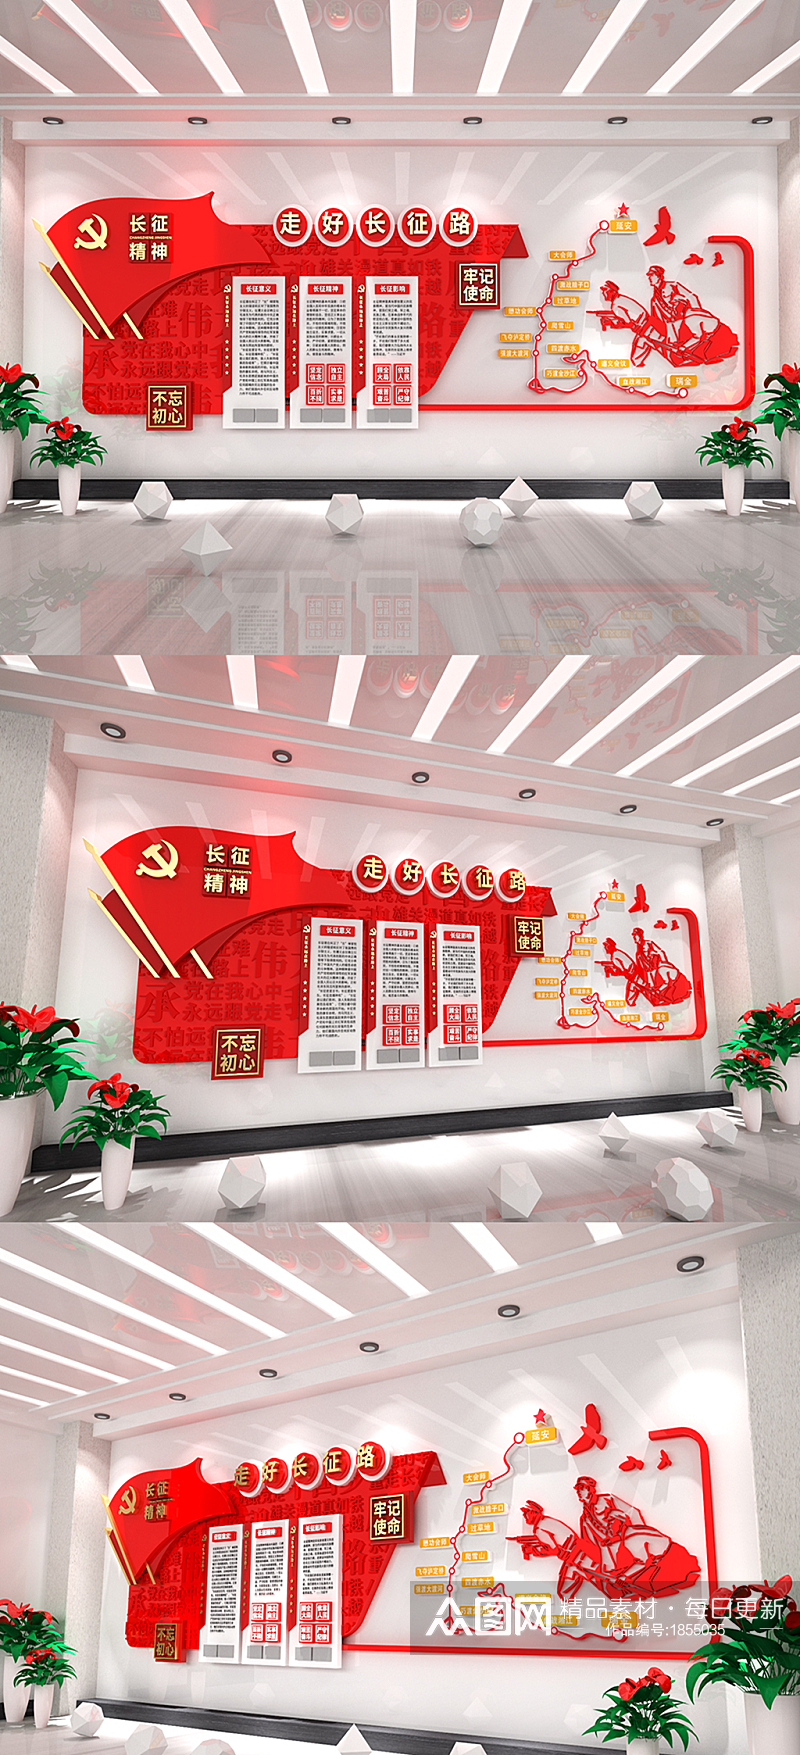 3D立体中国红色革命精神党建文化墙素材